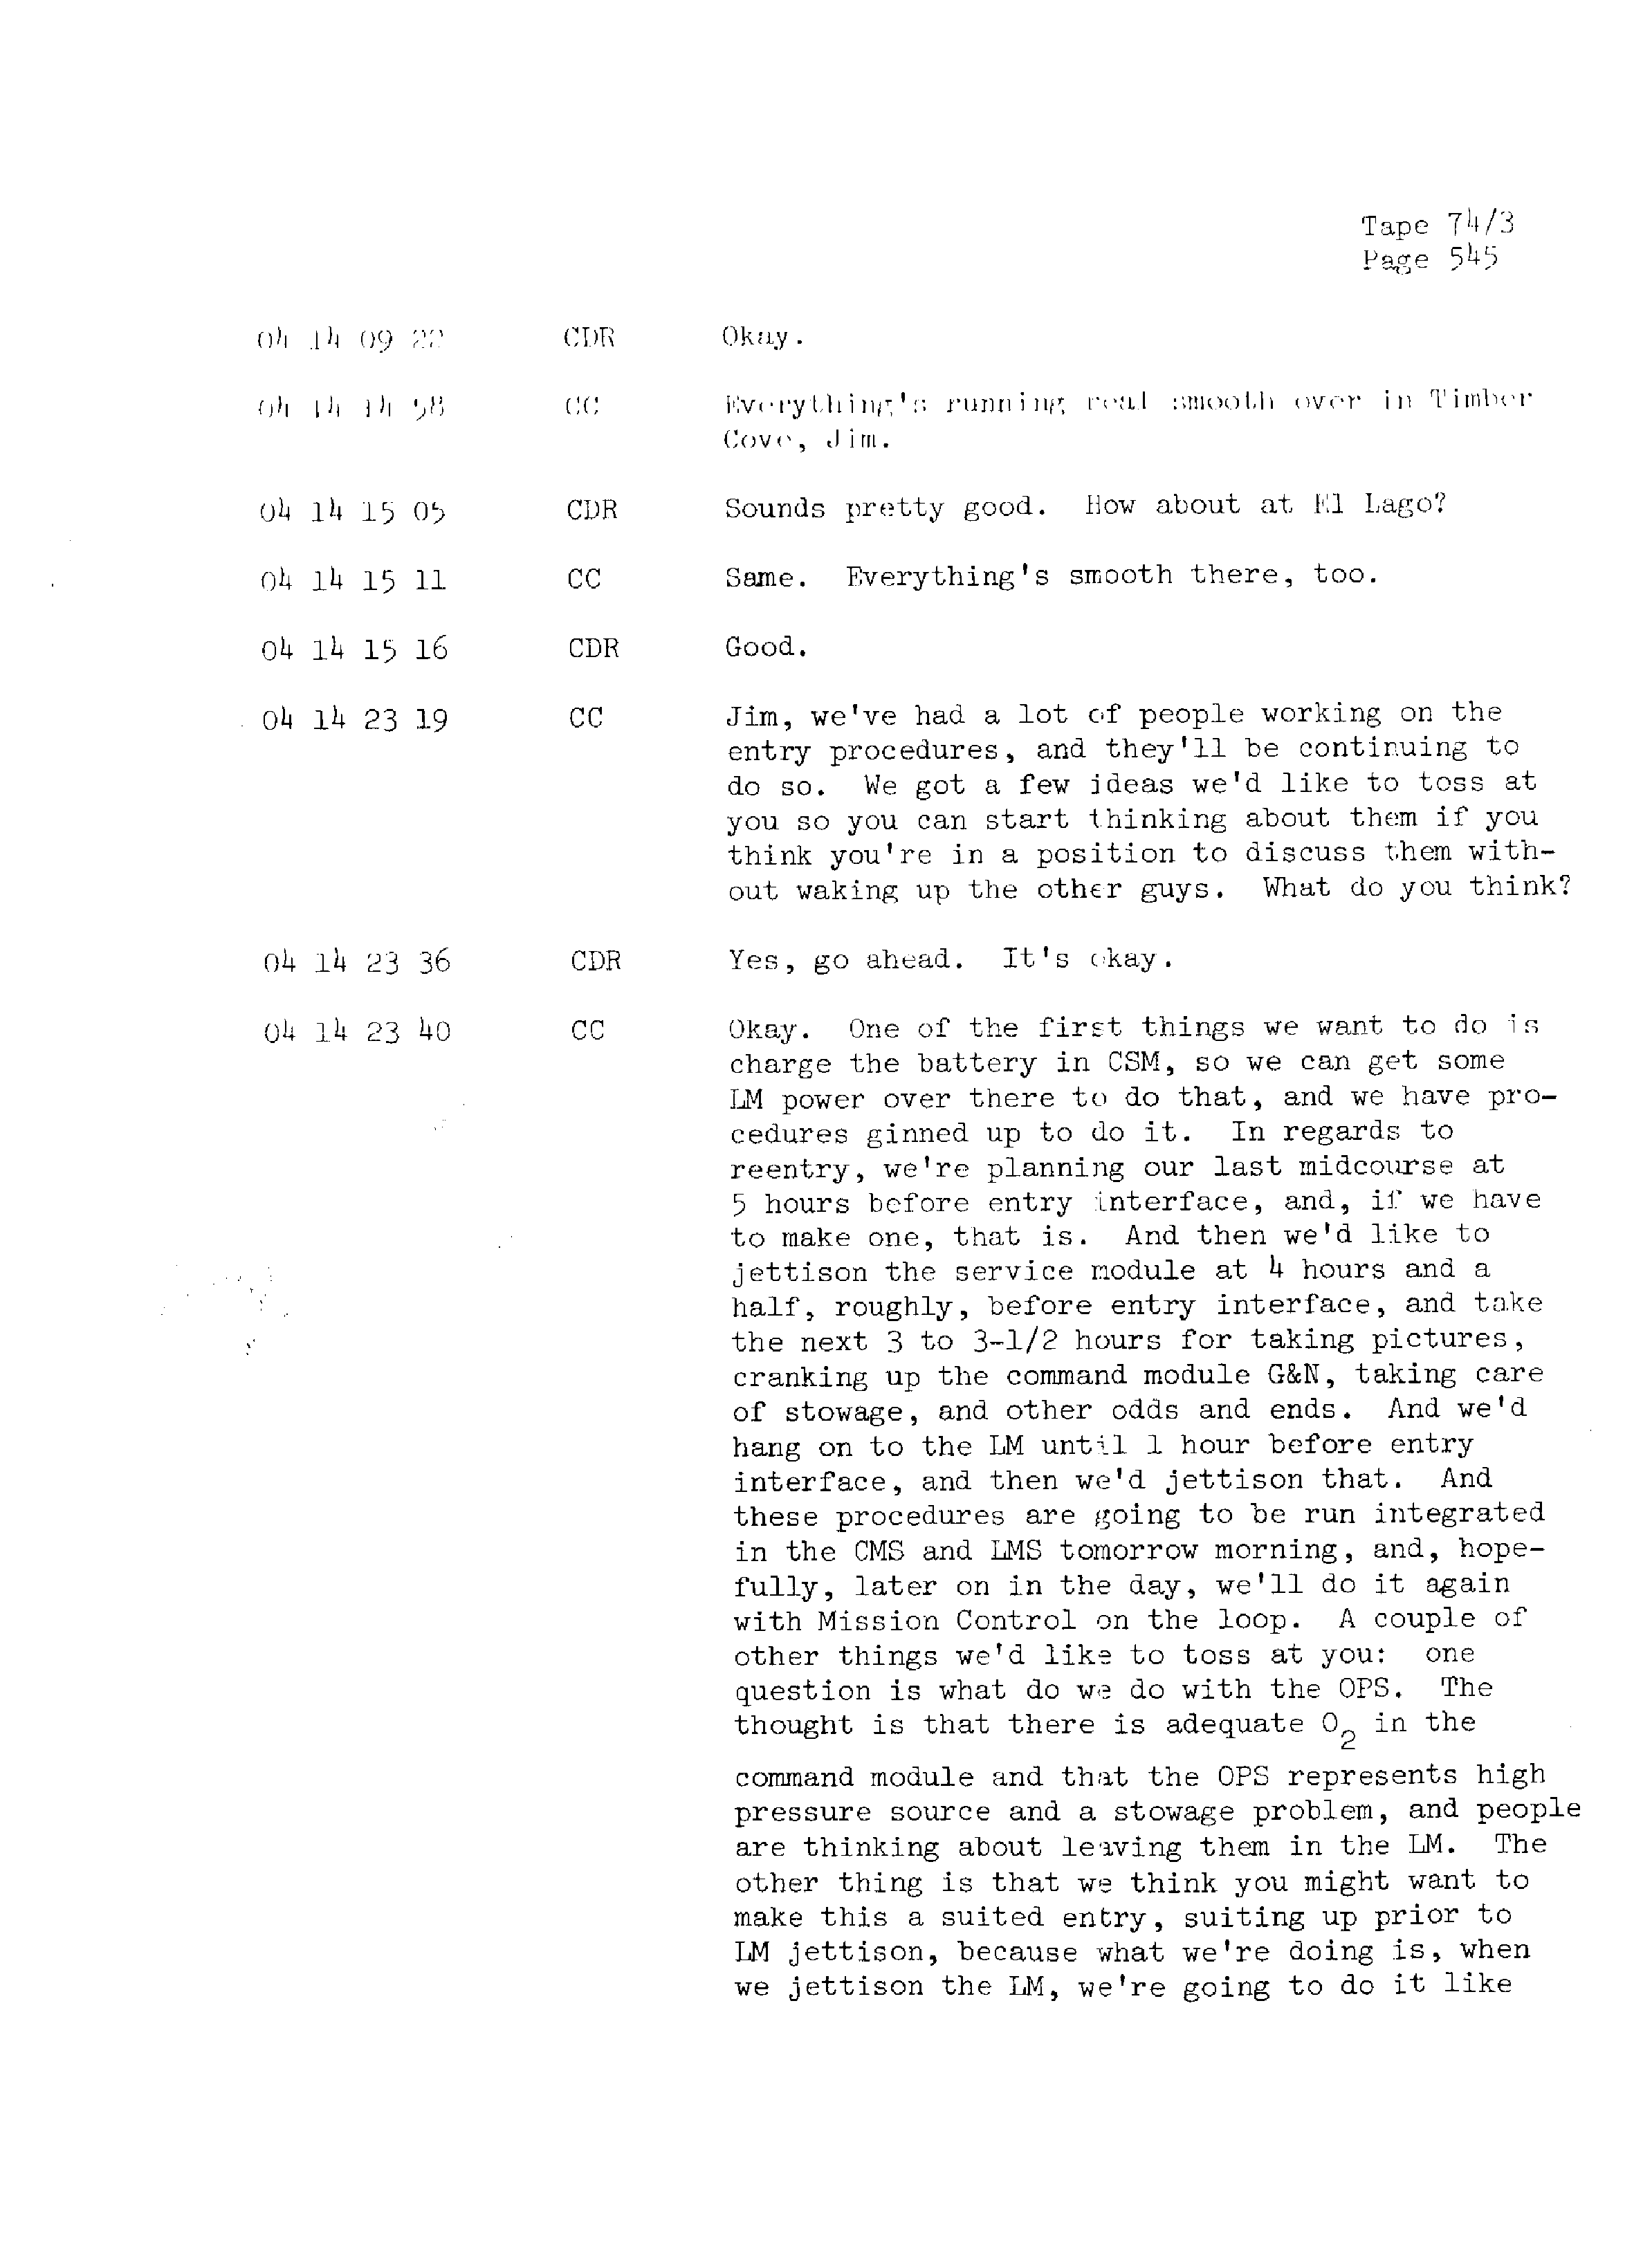 Page 552 of Apollo 13’s original transcript